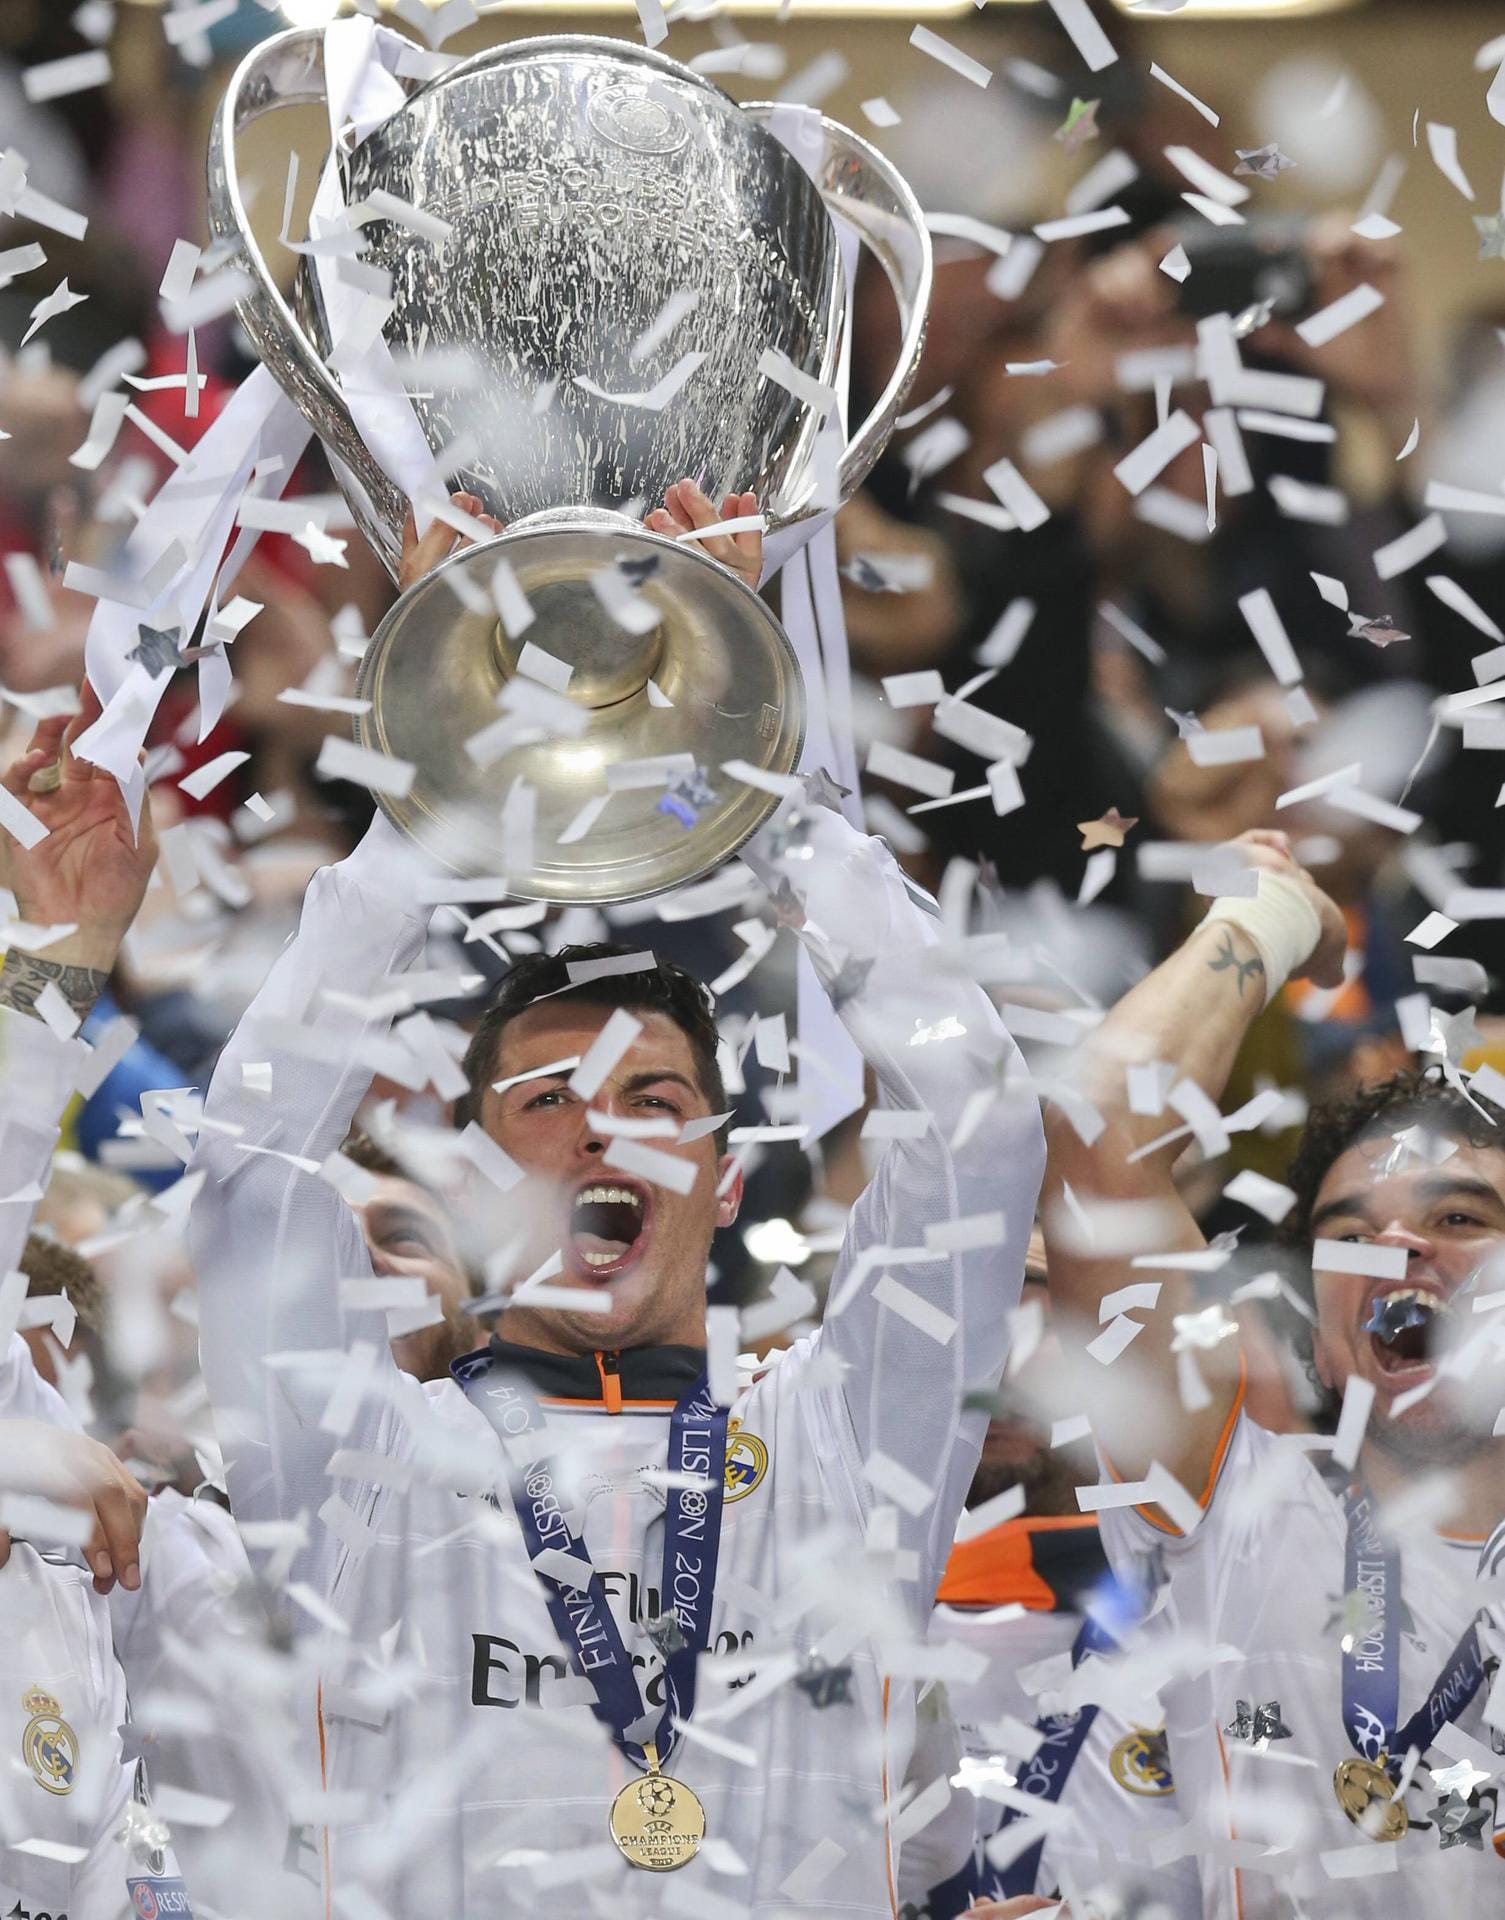 Erster Champions-League-Titel mit Real Madrid 2014: Ein dramatisches Finale gegen Atlético, bei der die Mannschaft von Carlo Ancelotti das Spiel erst in der Verlängerung für sich entscheiden konnte.